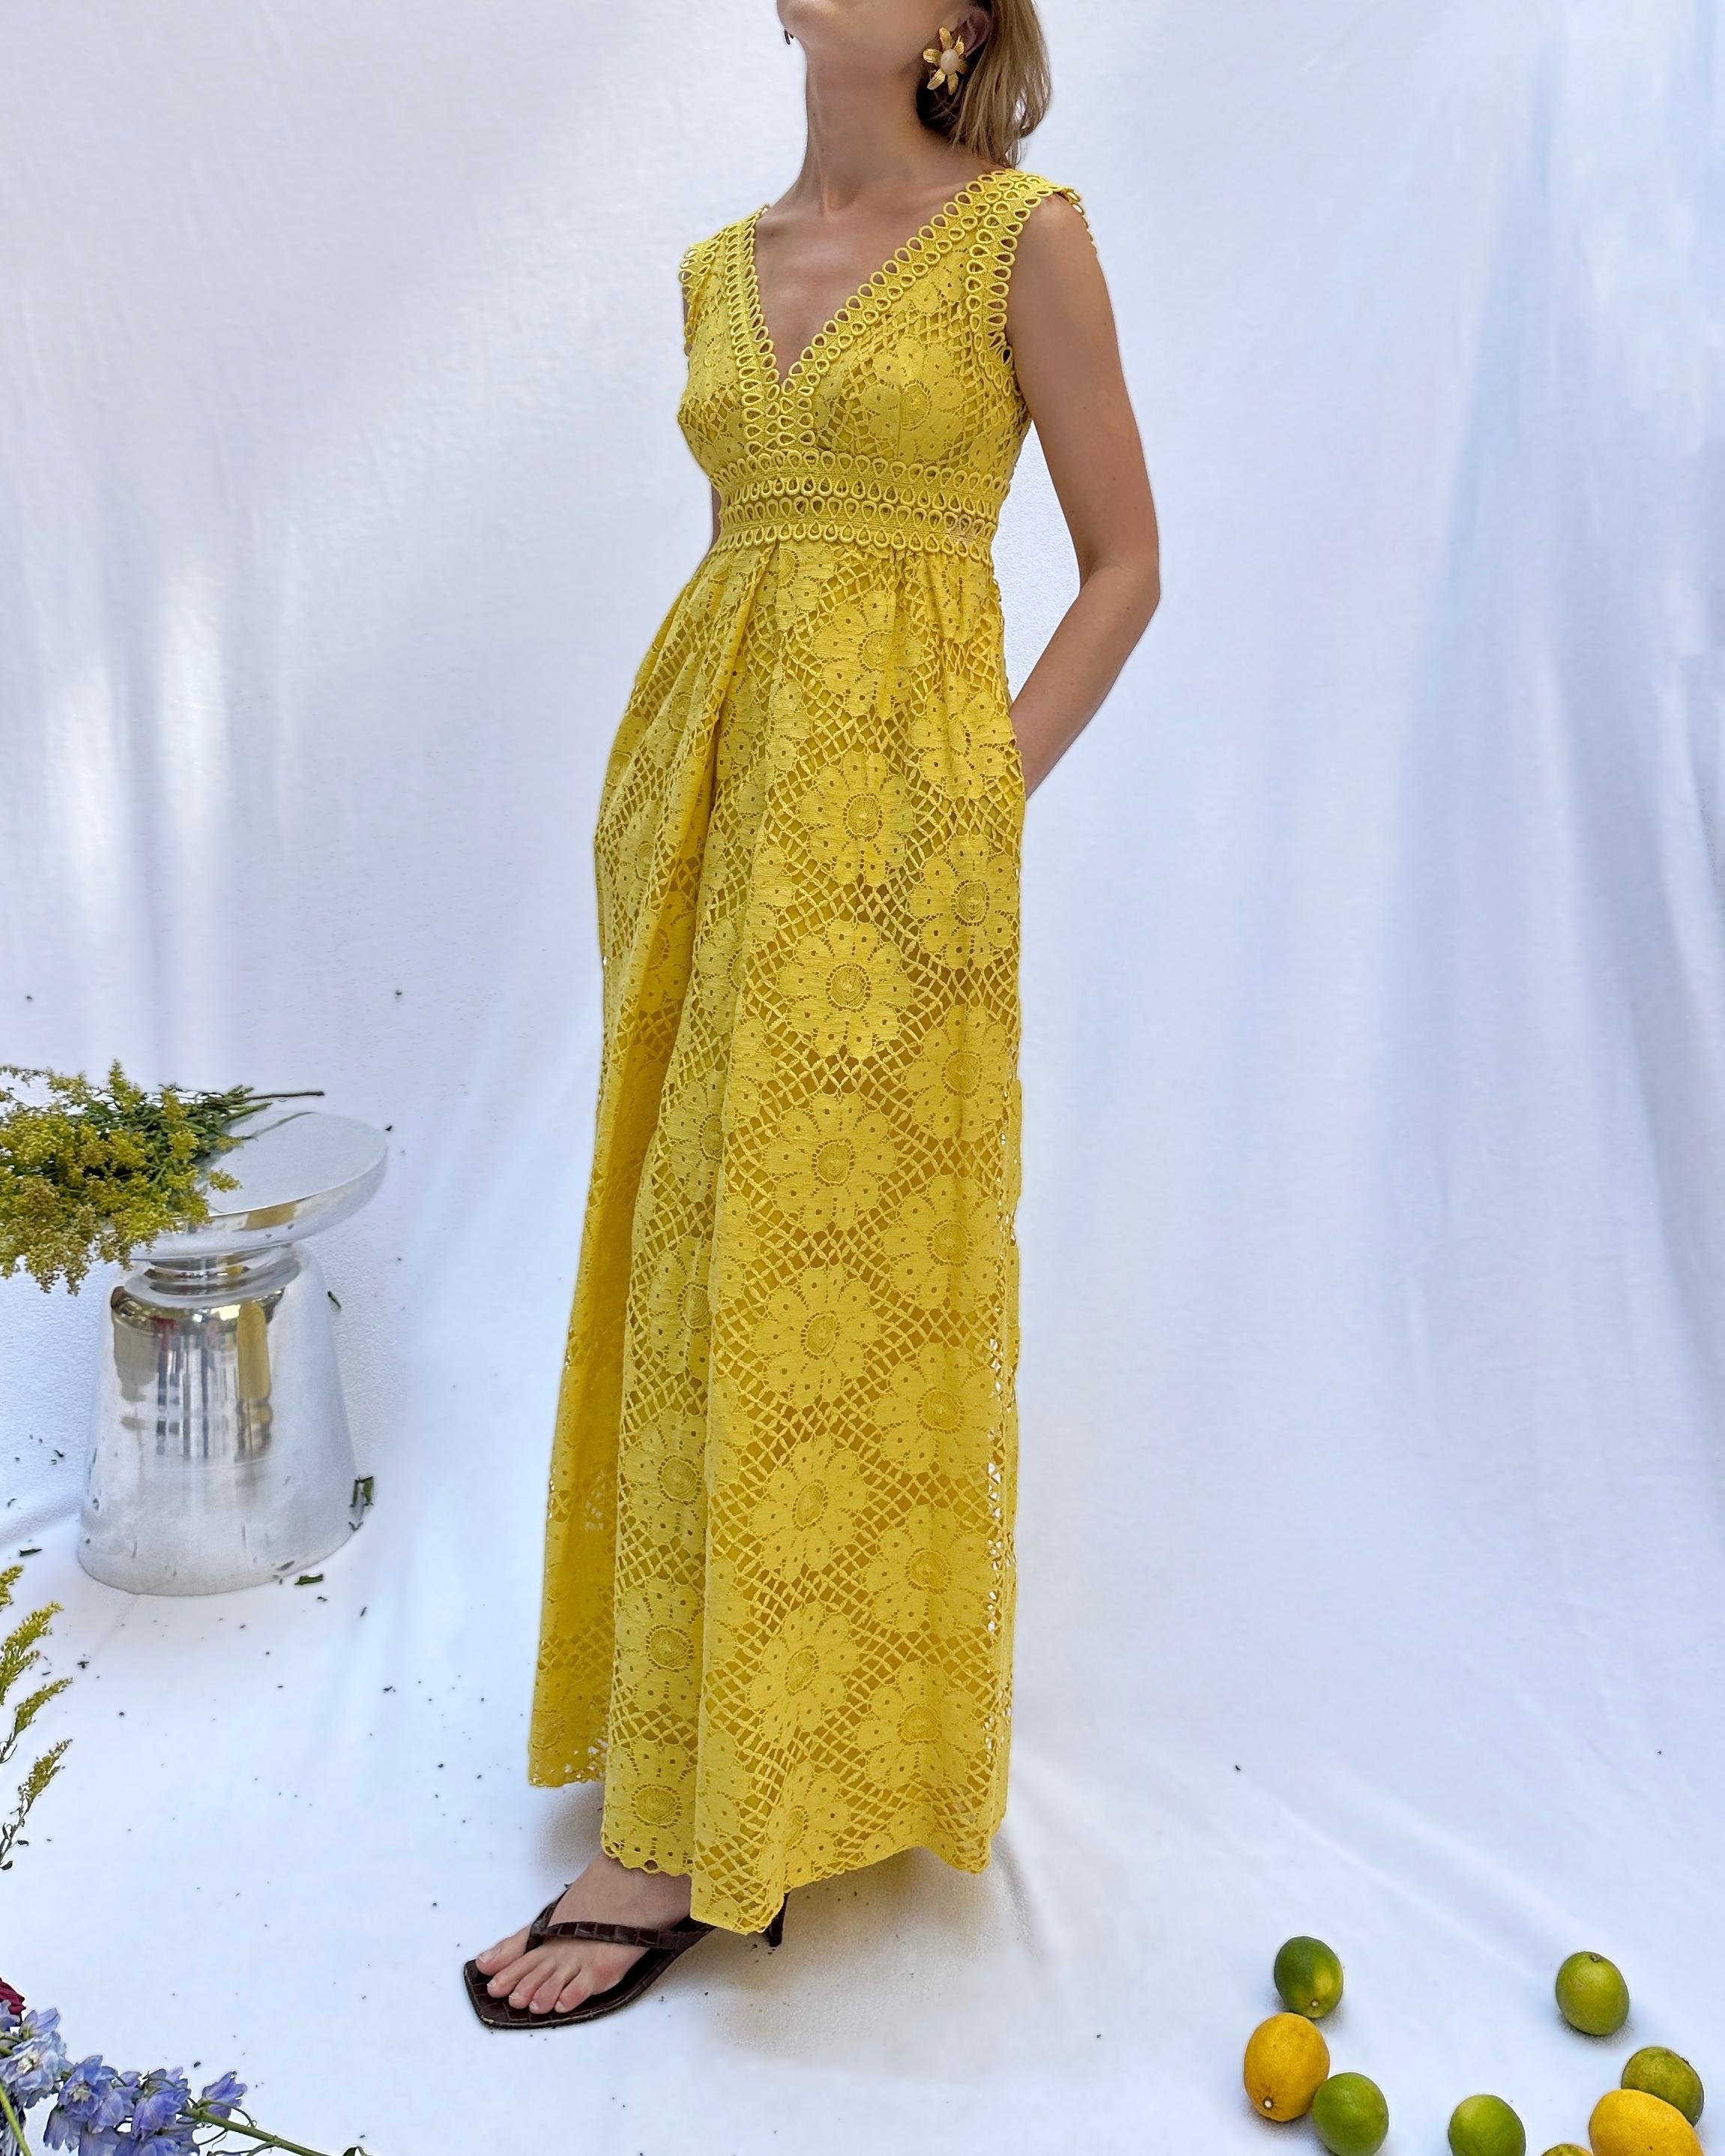 Cette robe colonne en dentelle guipure jaune de Lillie Rubin a été réalisée dans les années 1970. Elle est de la plus belle et de la plus vibrante nuance de jaune canari. J'adore tous les détails de la dentelle au crochet à motifs floraux, qui